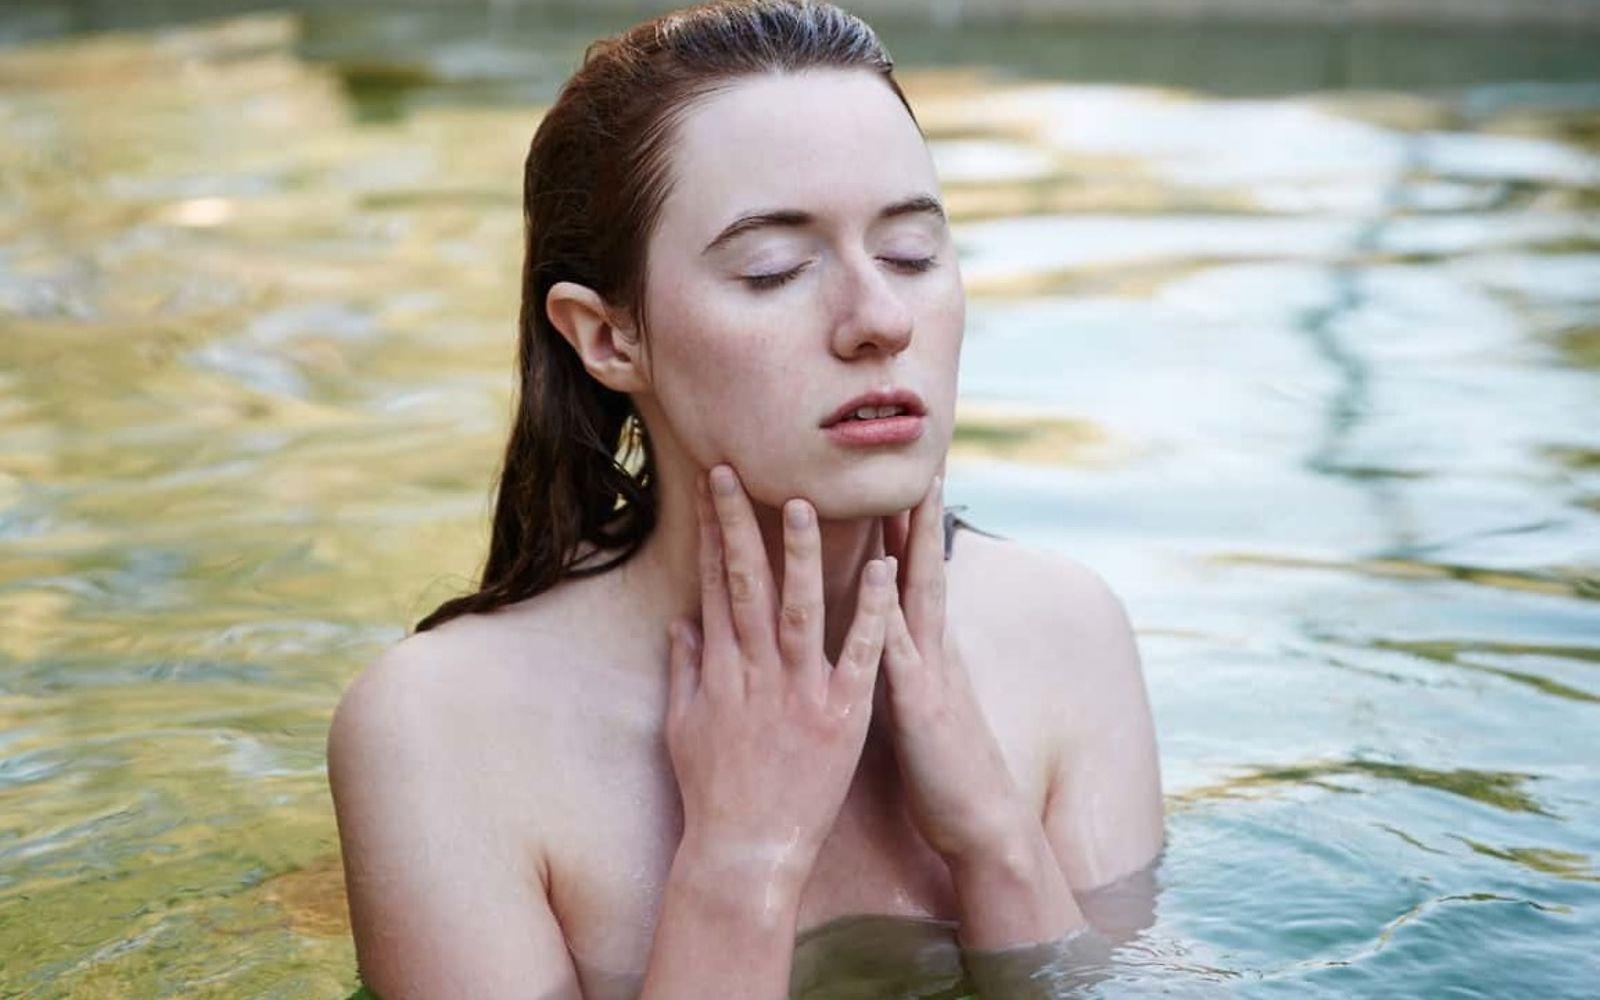 Anthroposophische Medizin: Frau badet entspannt in einem Gewässer